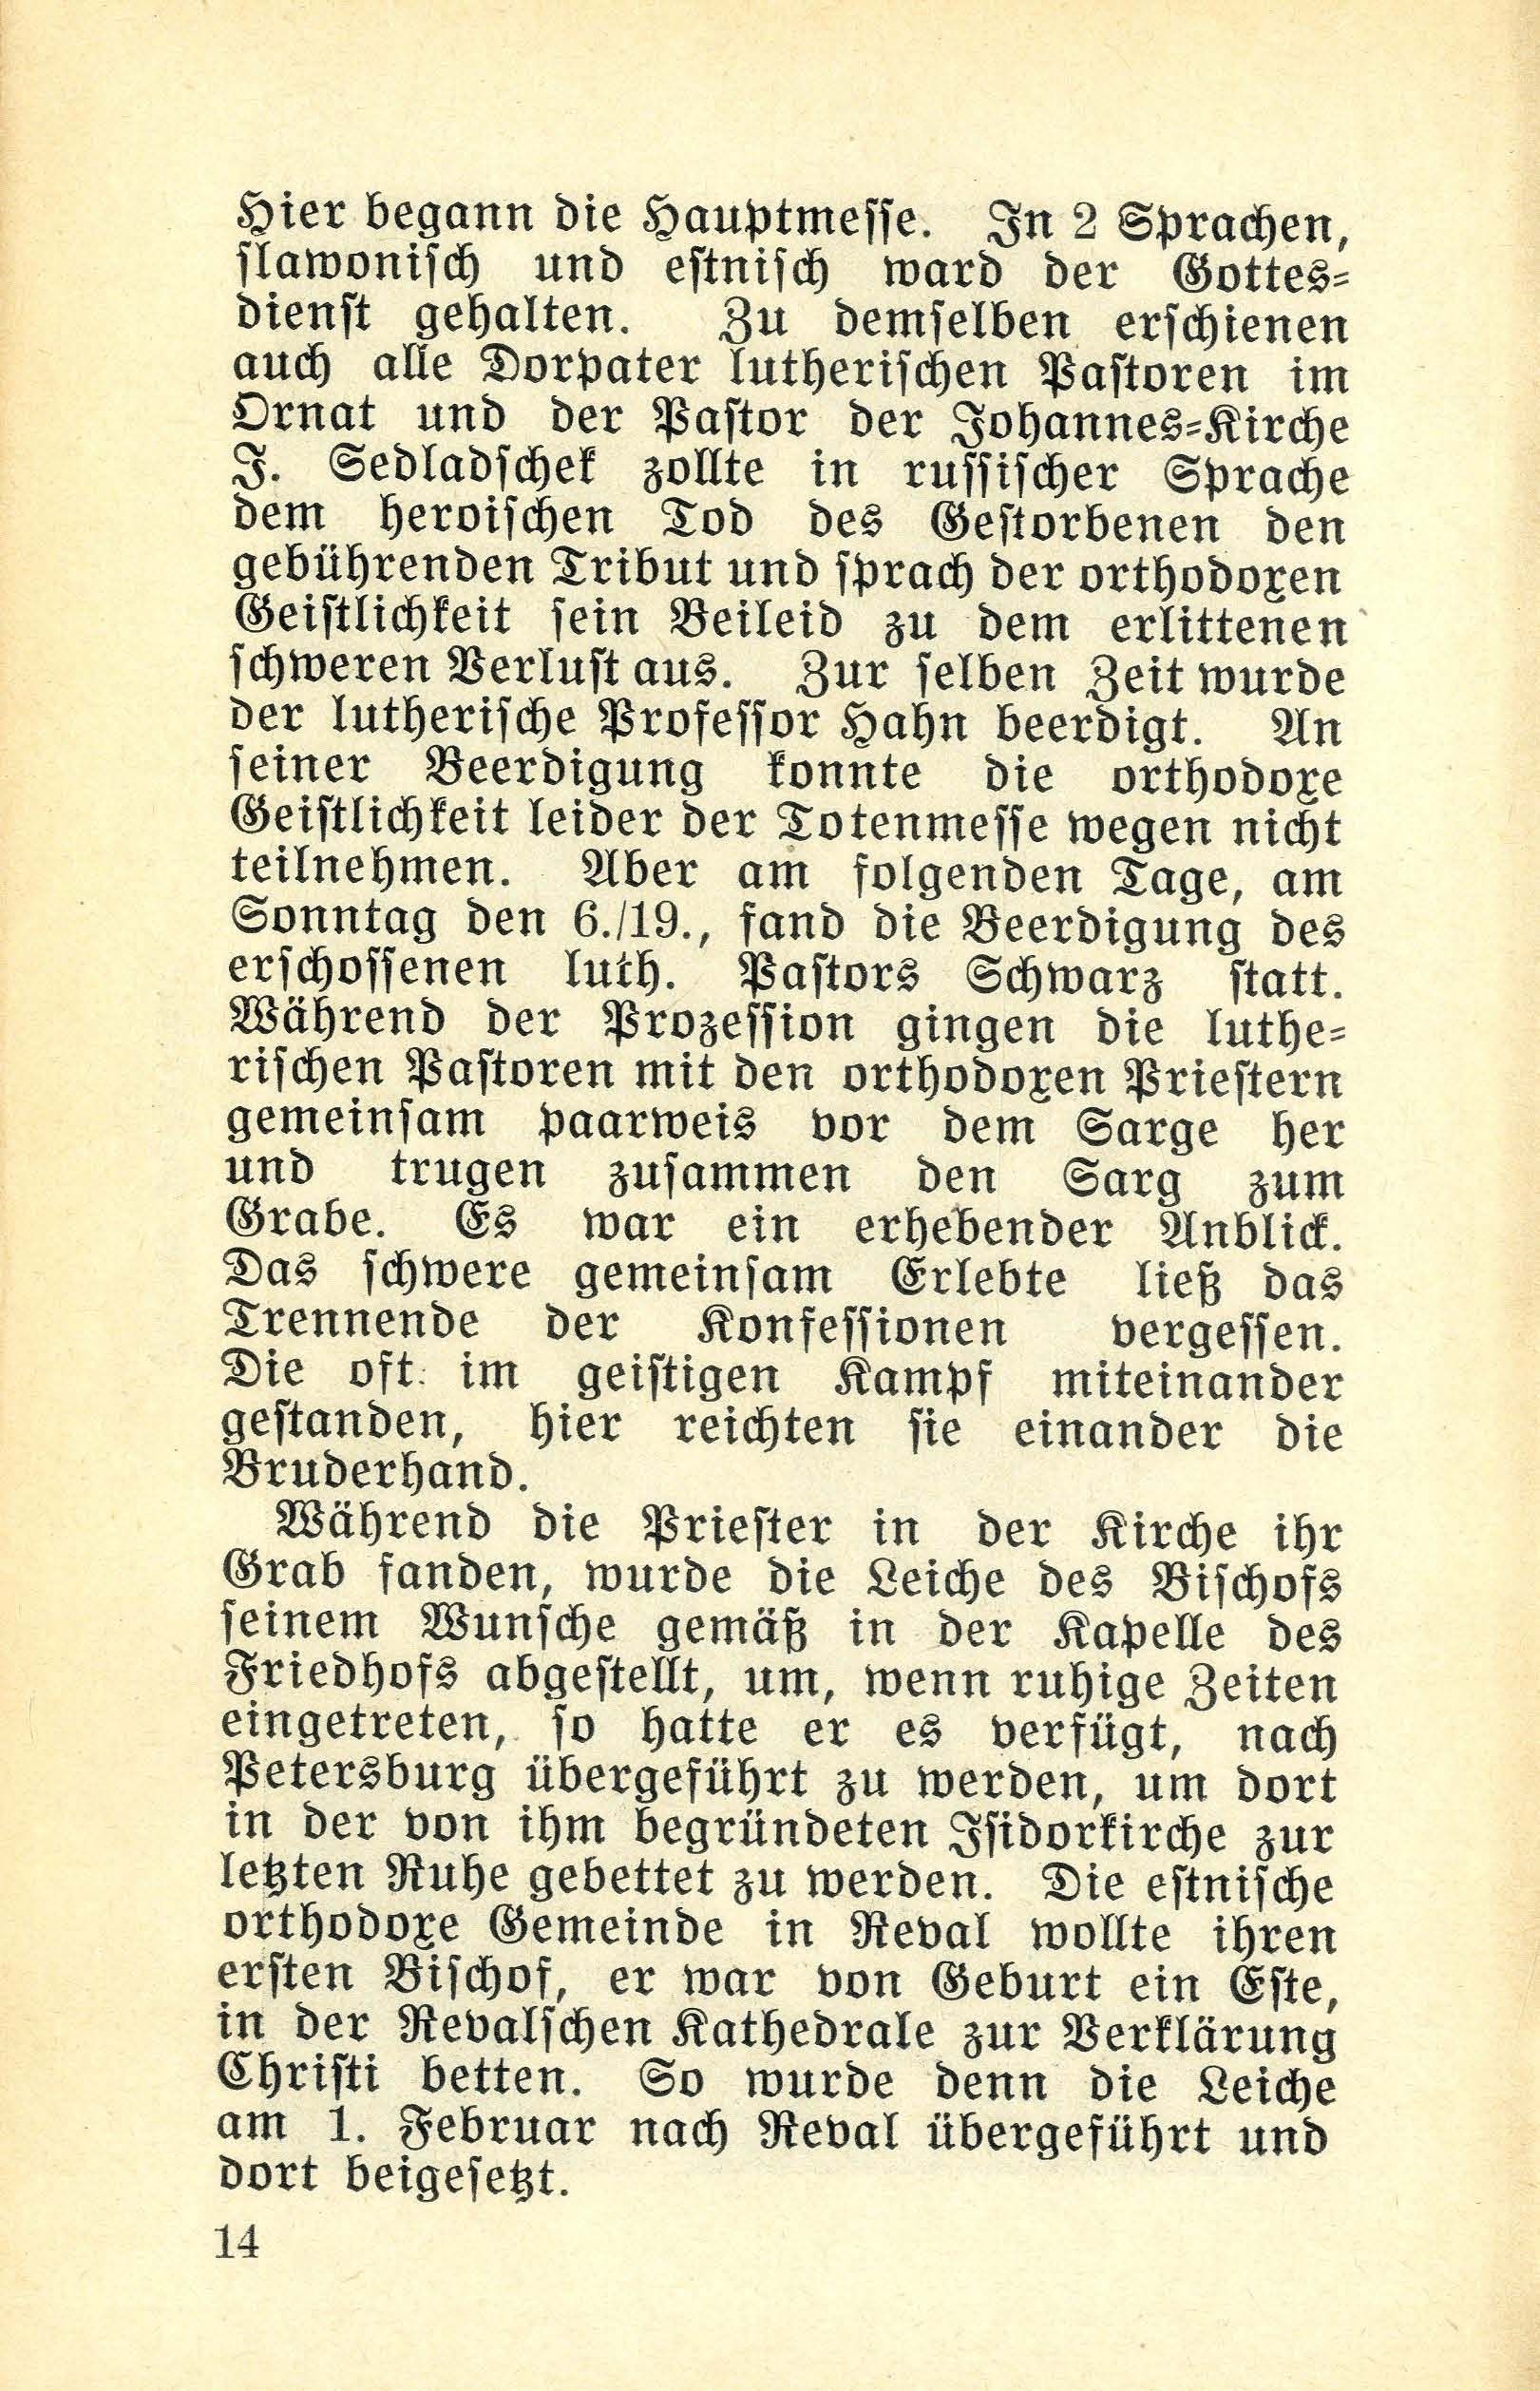 Die Dorpatschen Märtyrer der orthodoxen Kirche vom Jahre 1919 (1932) | 15. (14) Основной текст